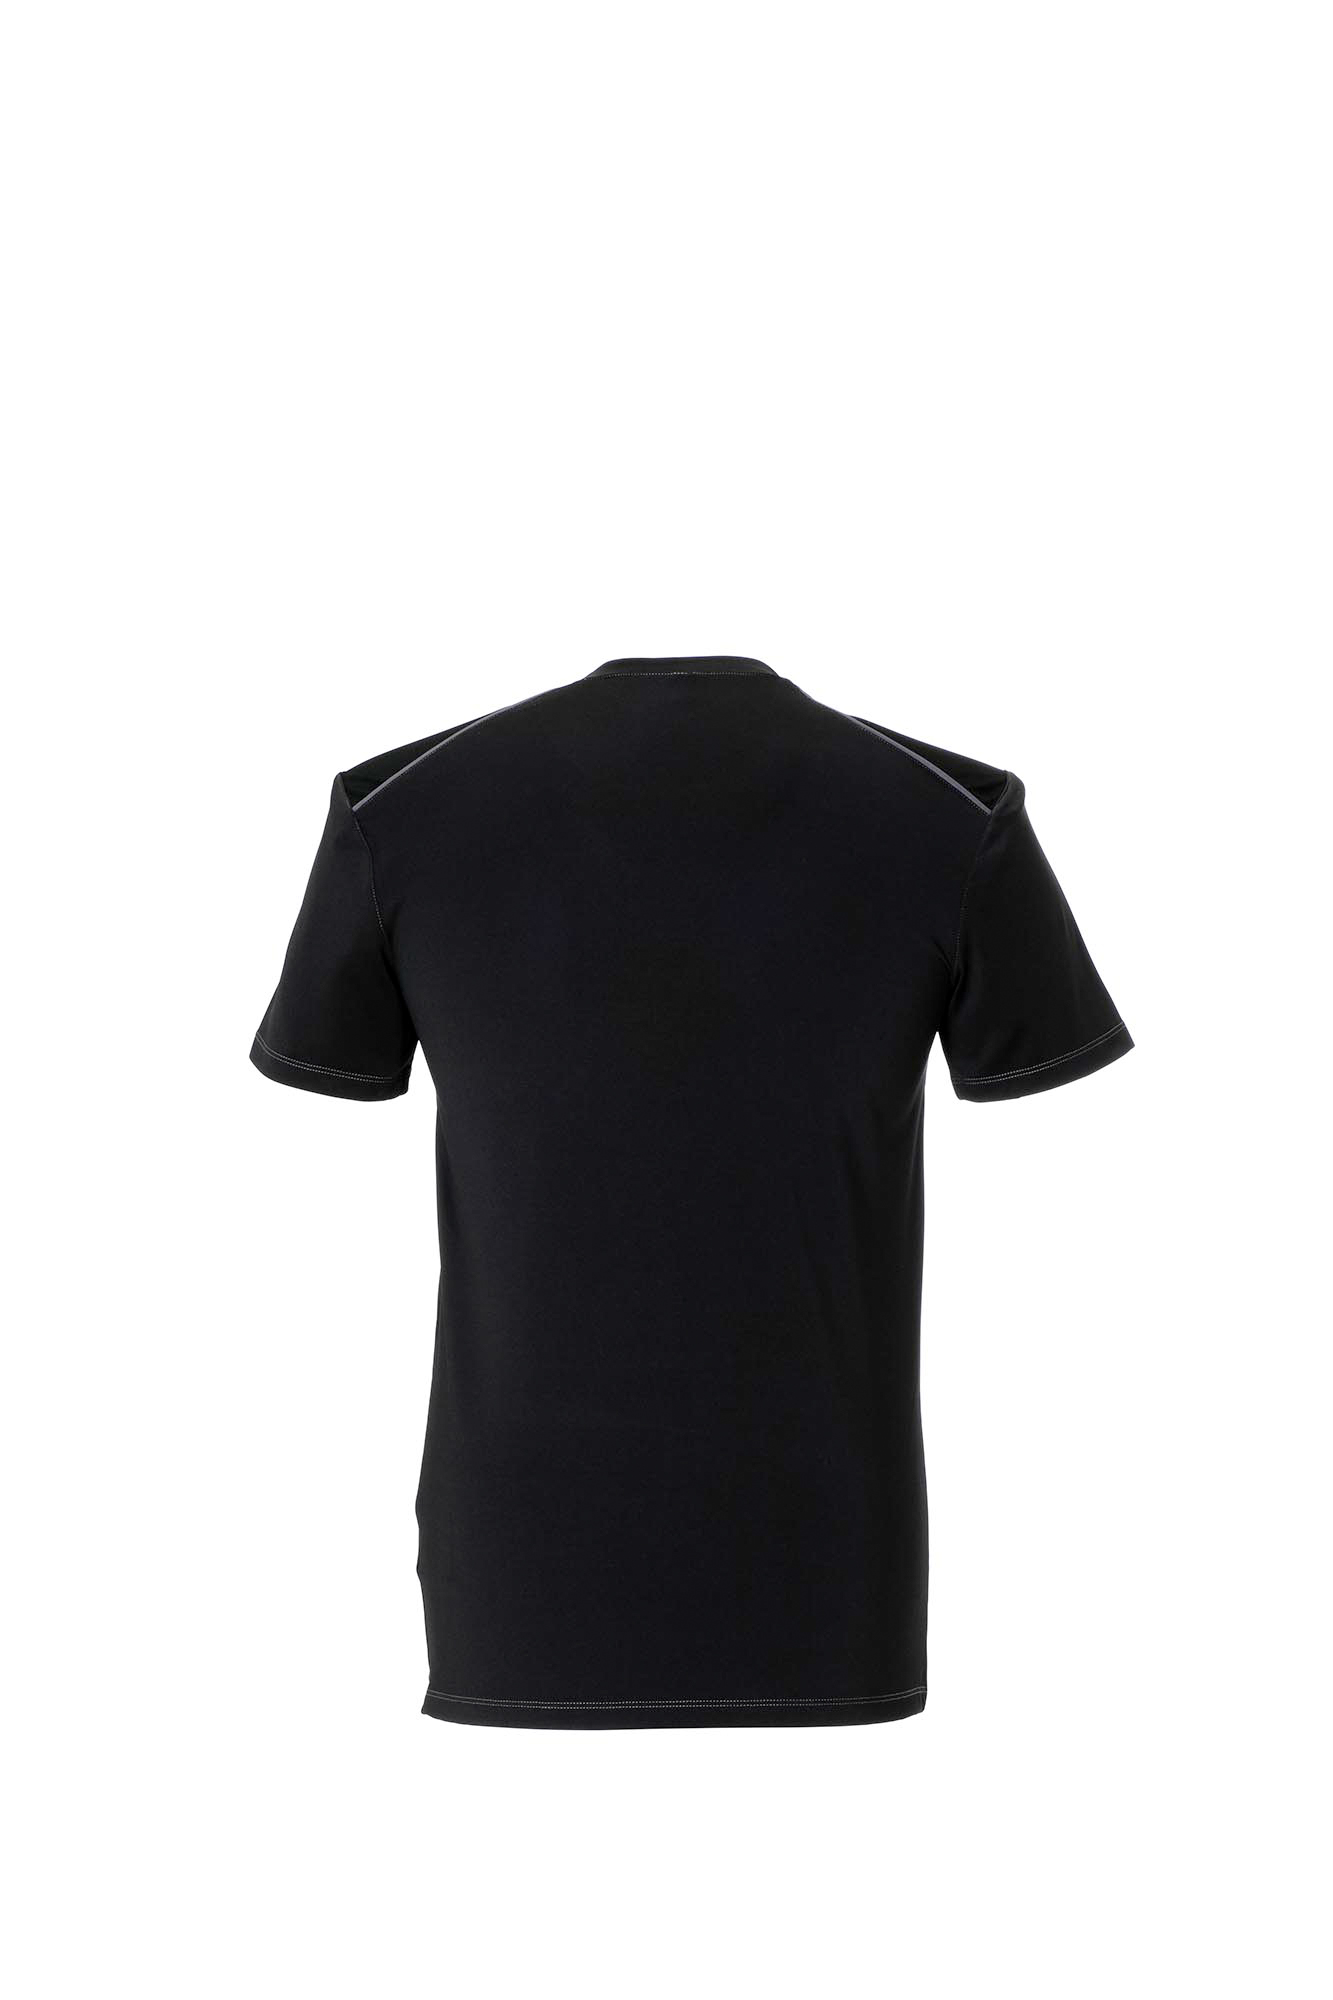 Planam Durawork T-Shirt atmungsaktives Arbeitsshirt Größe XS - 3XL, in 3 Farben